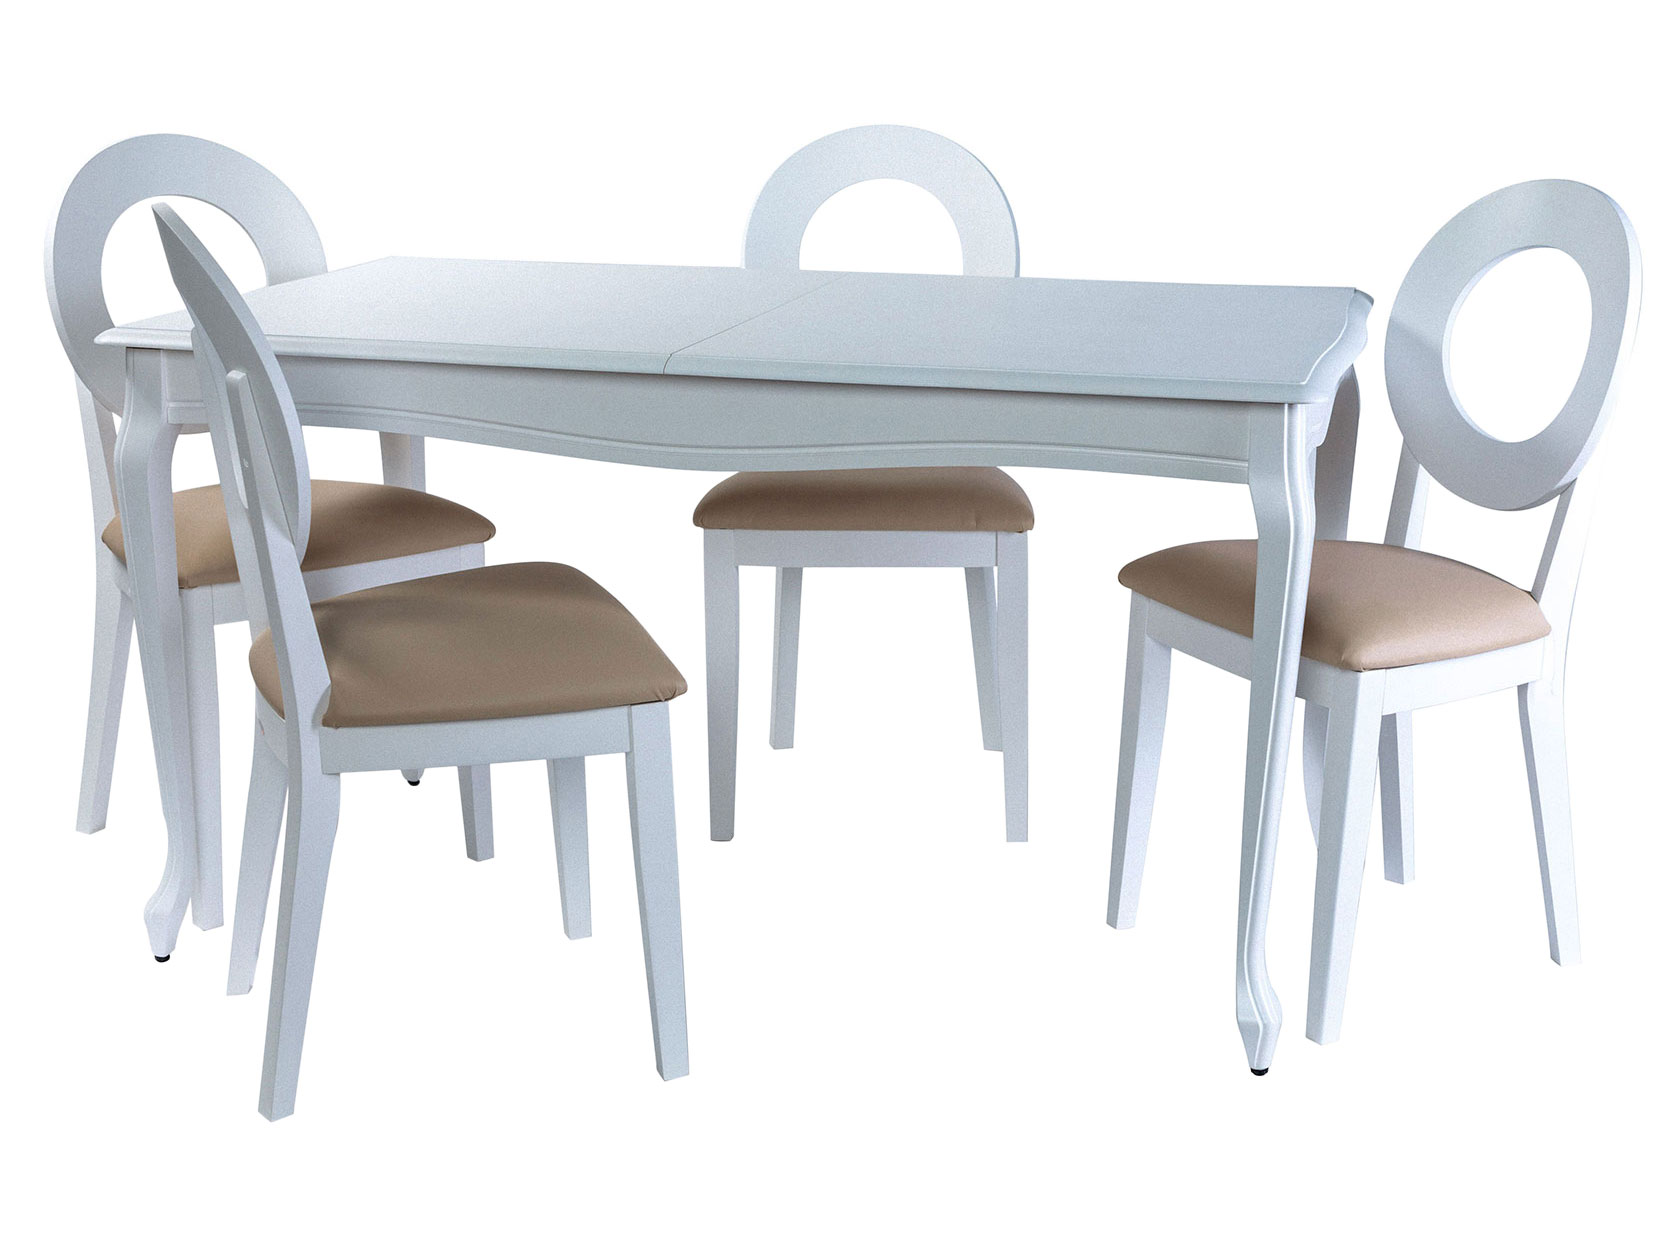 Обеденная группа Кабриоль стол + 4 стула Коломбо Эмаль белая/Nitro Cream, кожзам, Малый